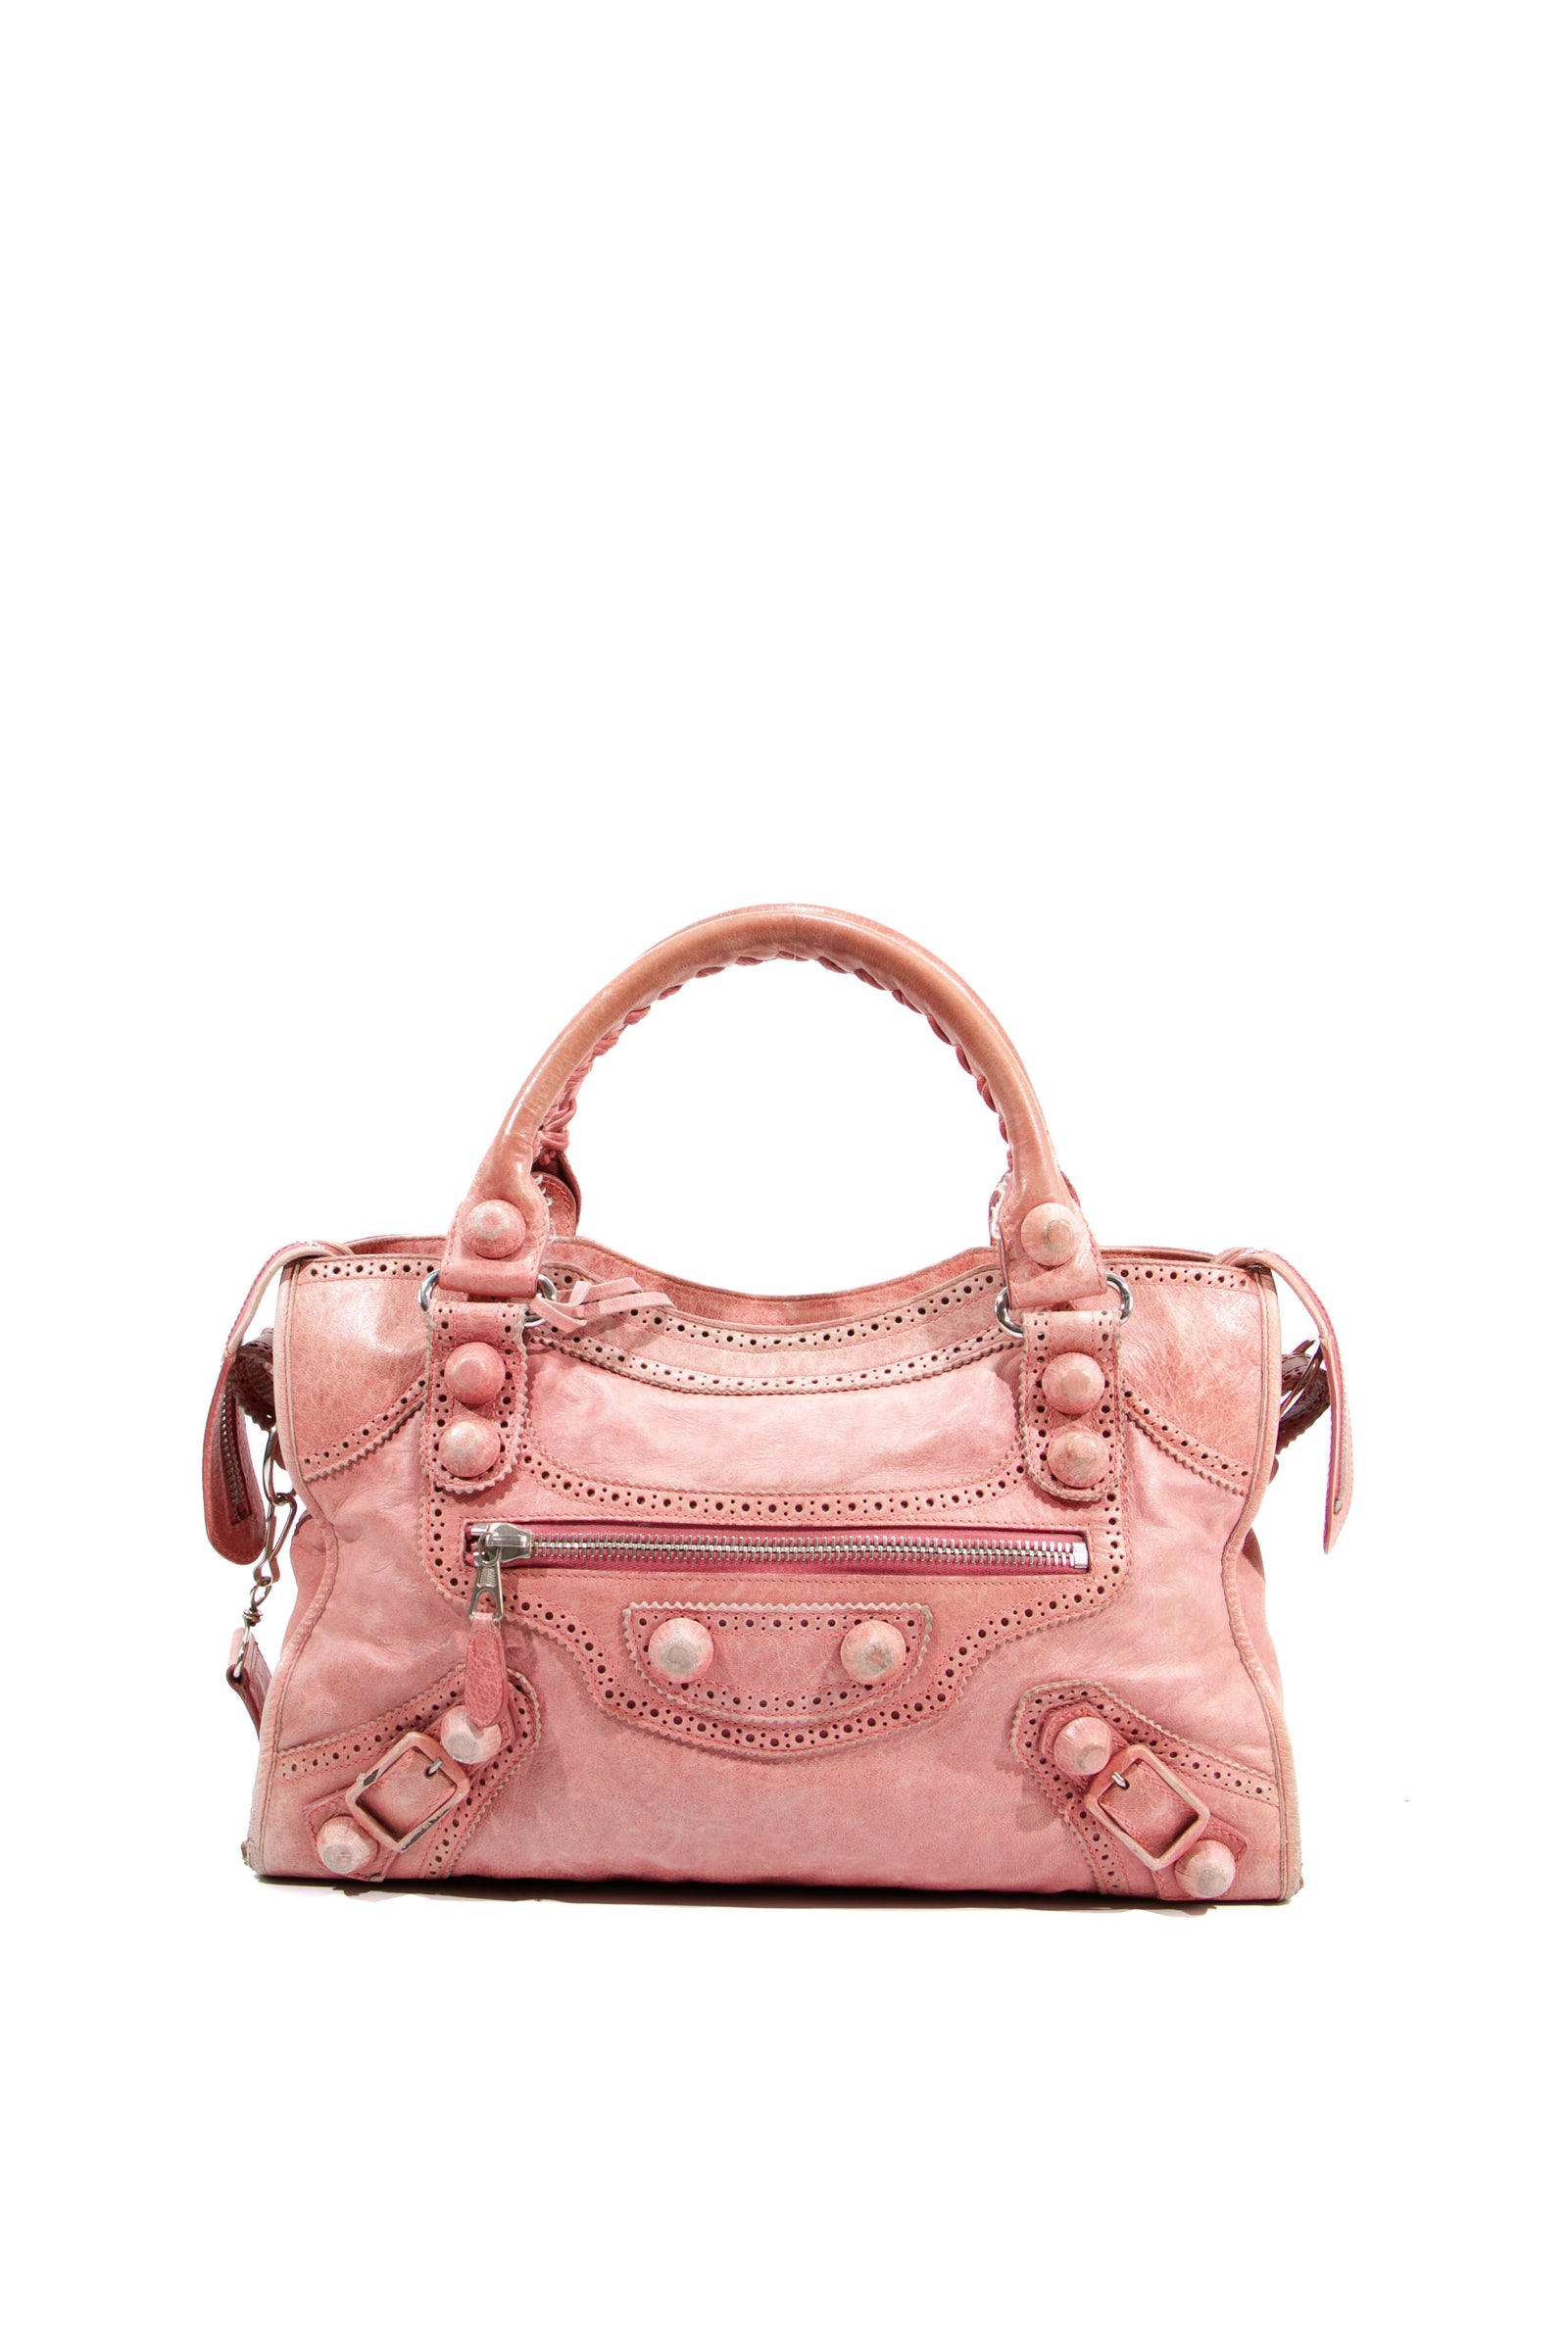 Burkina Leather Bag Togo - Pink Interior - Jaclyn Desanges